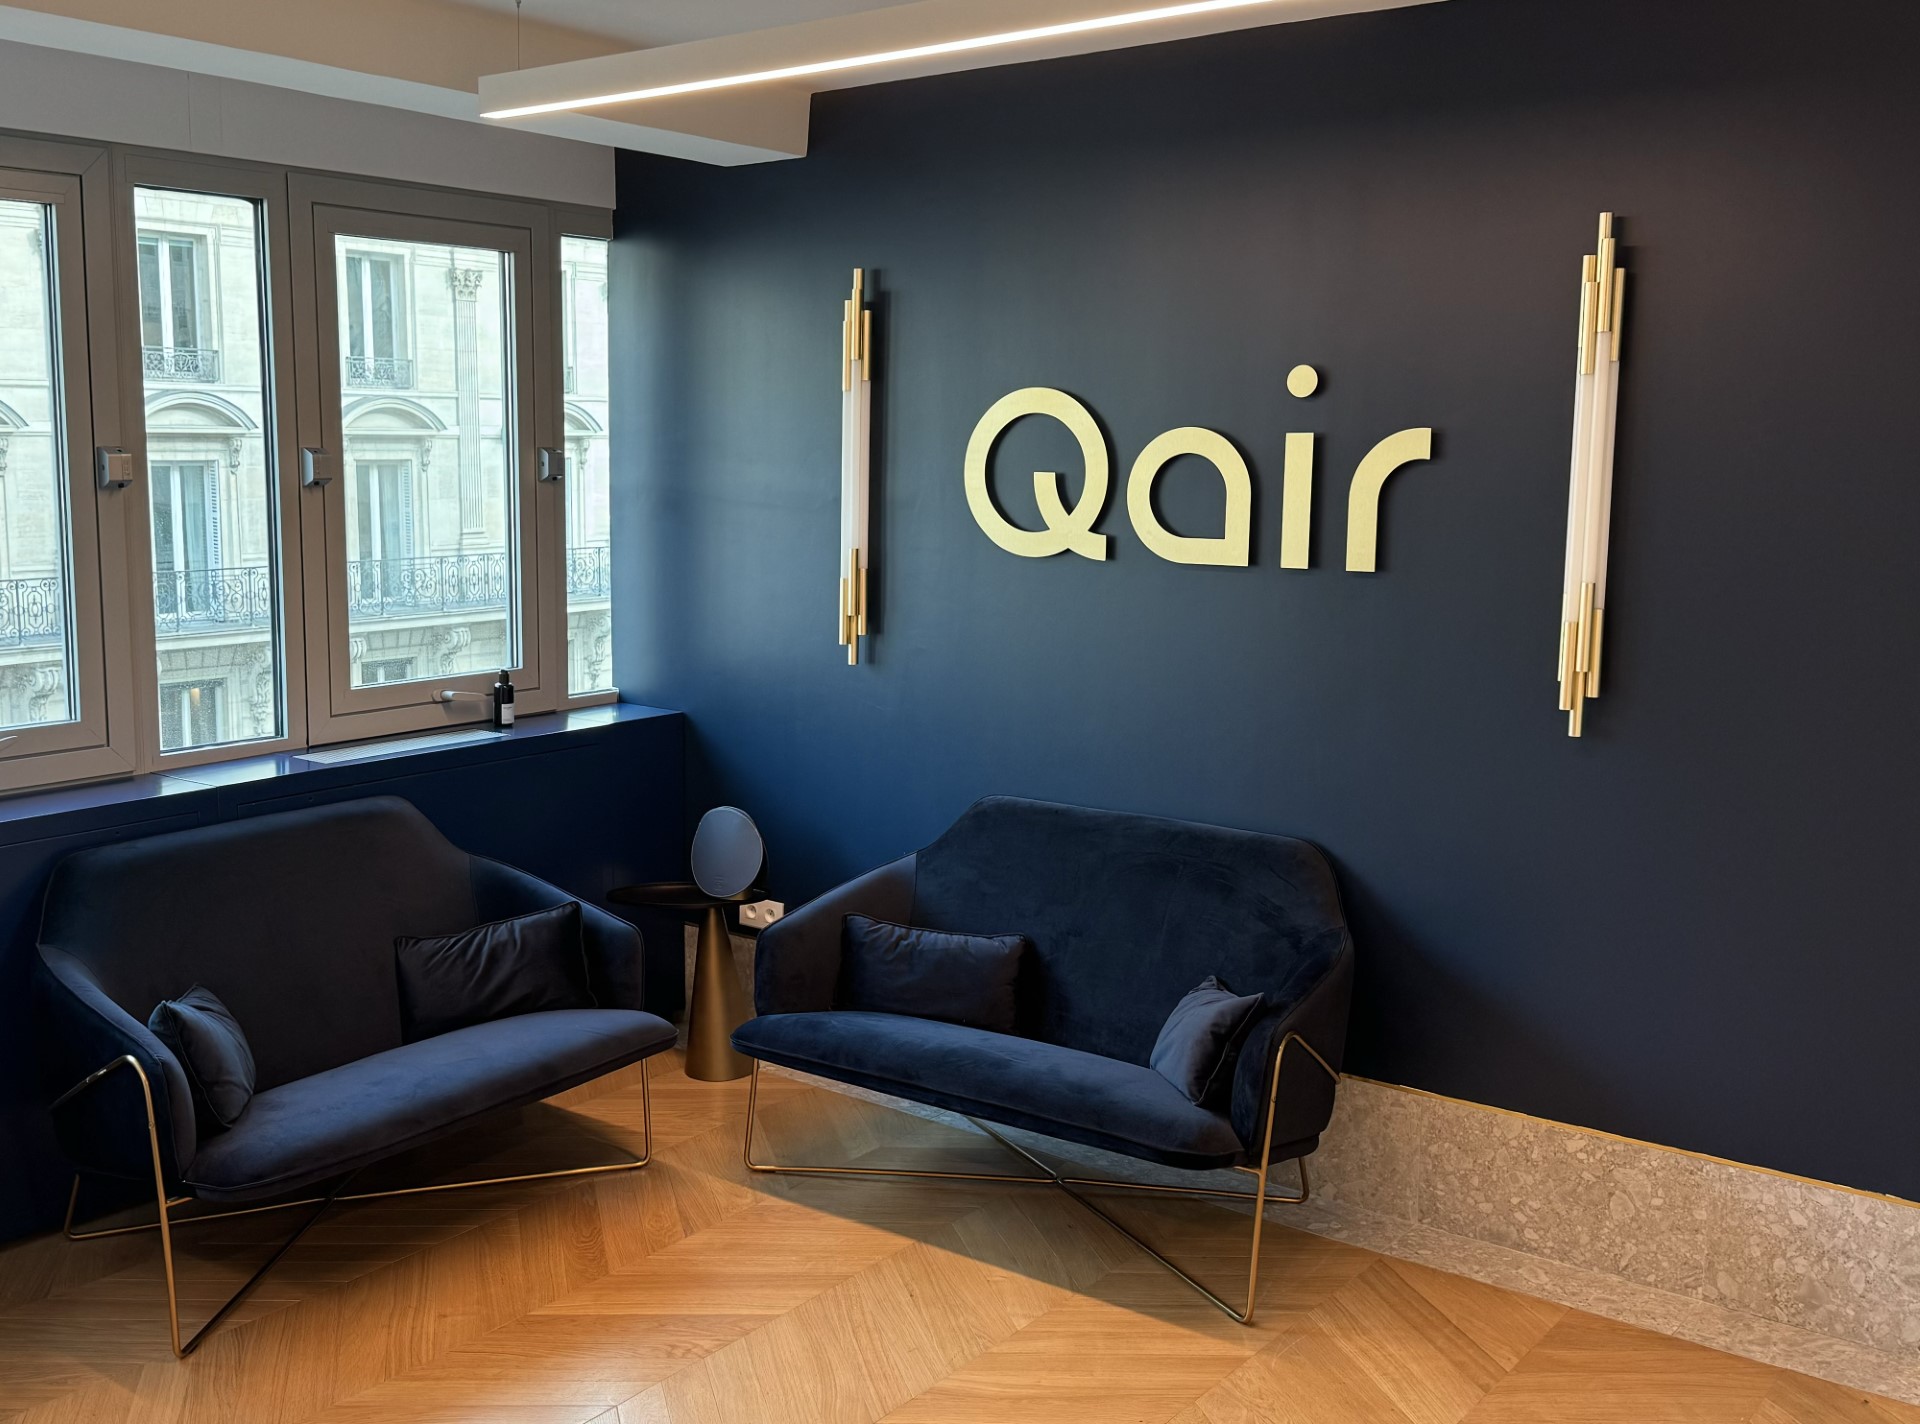 Picture of Qair's headquarters in Paris